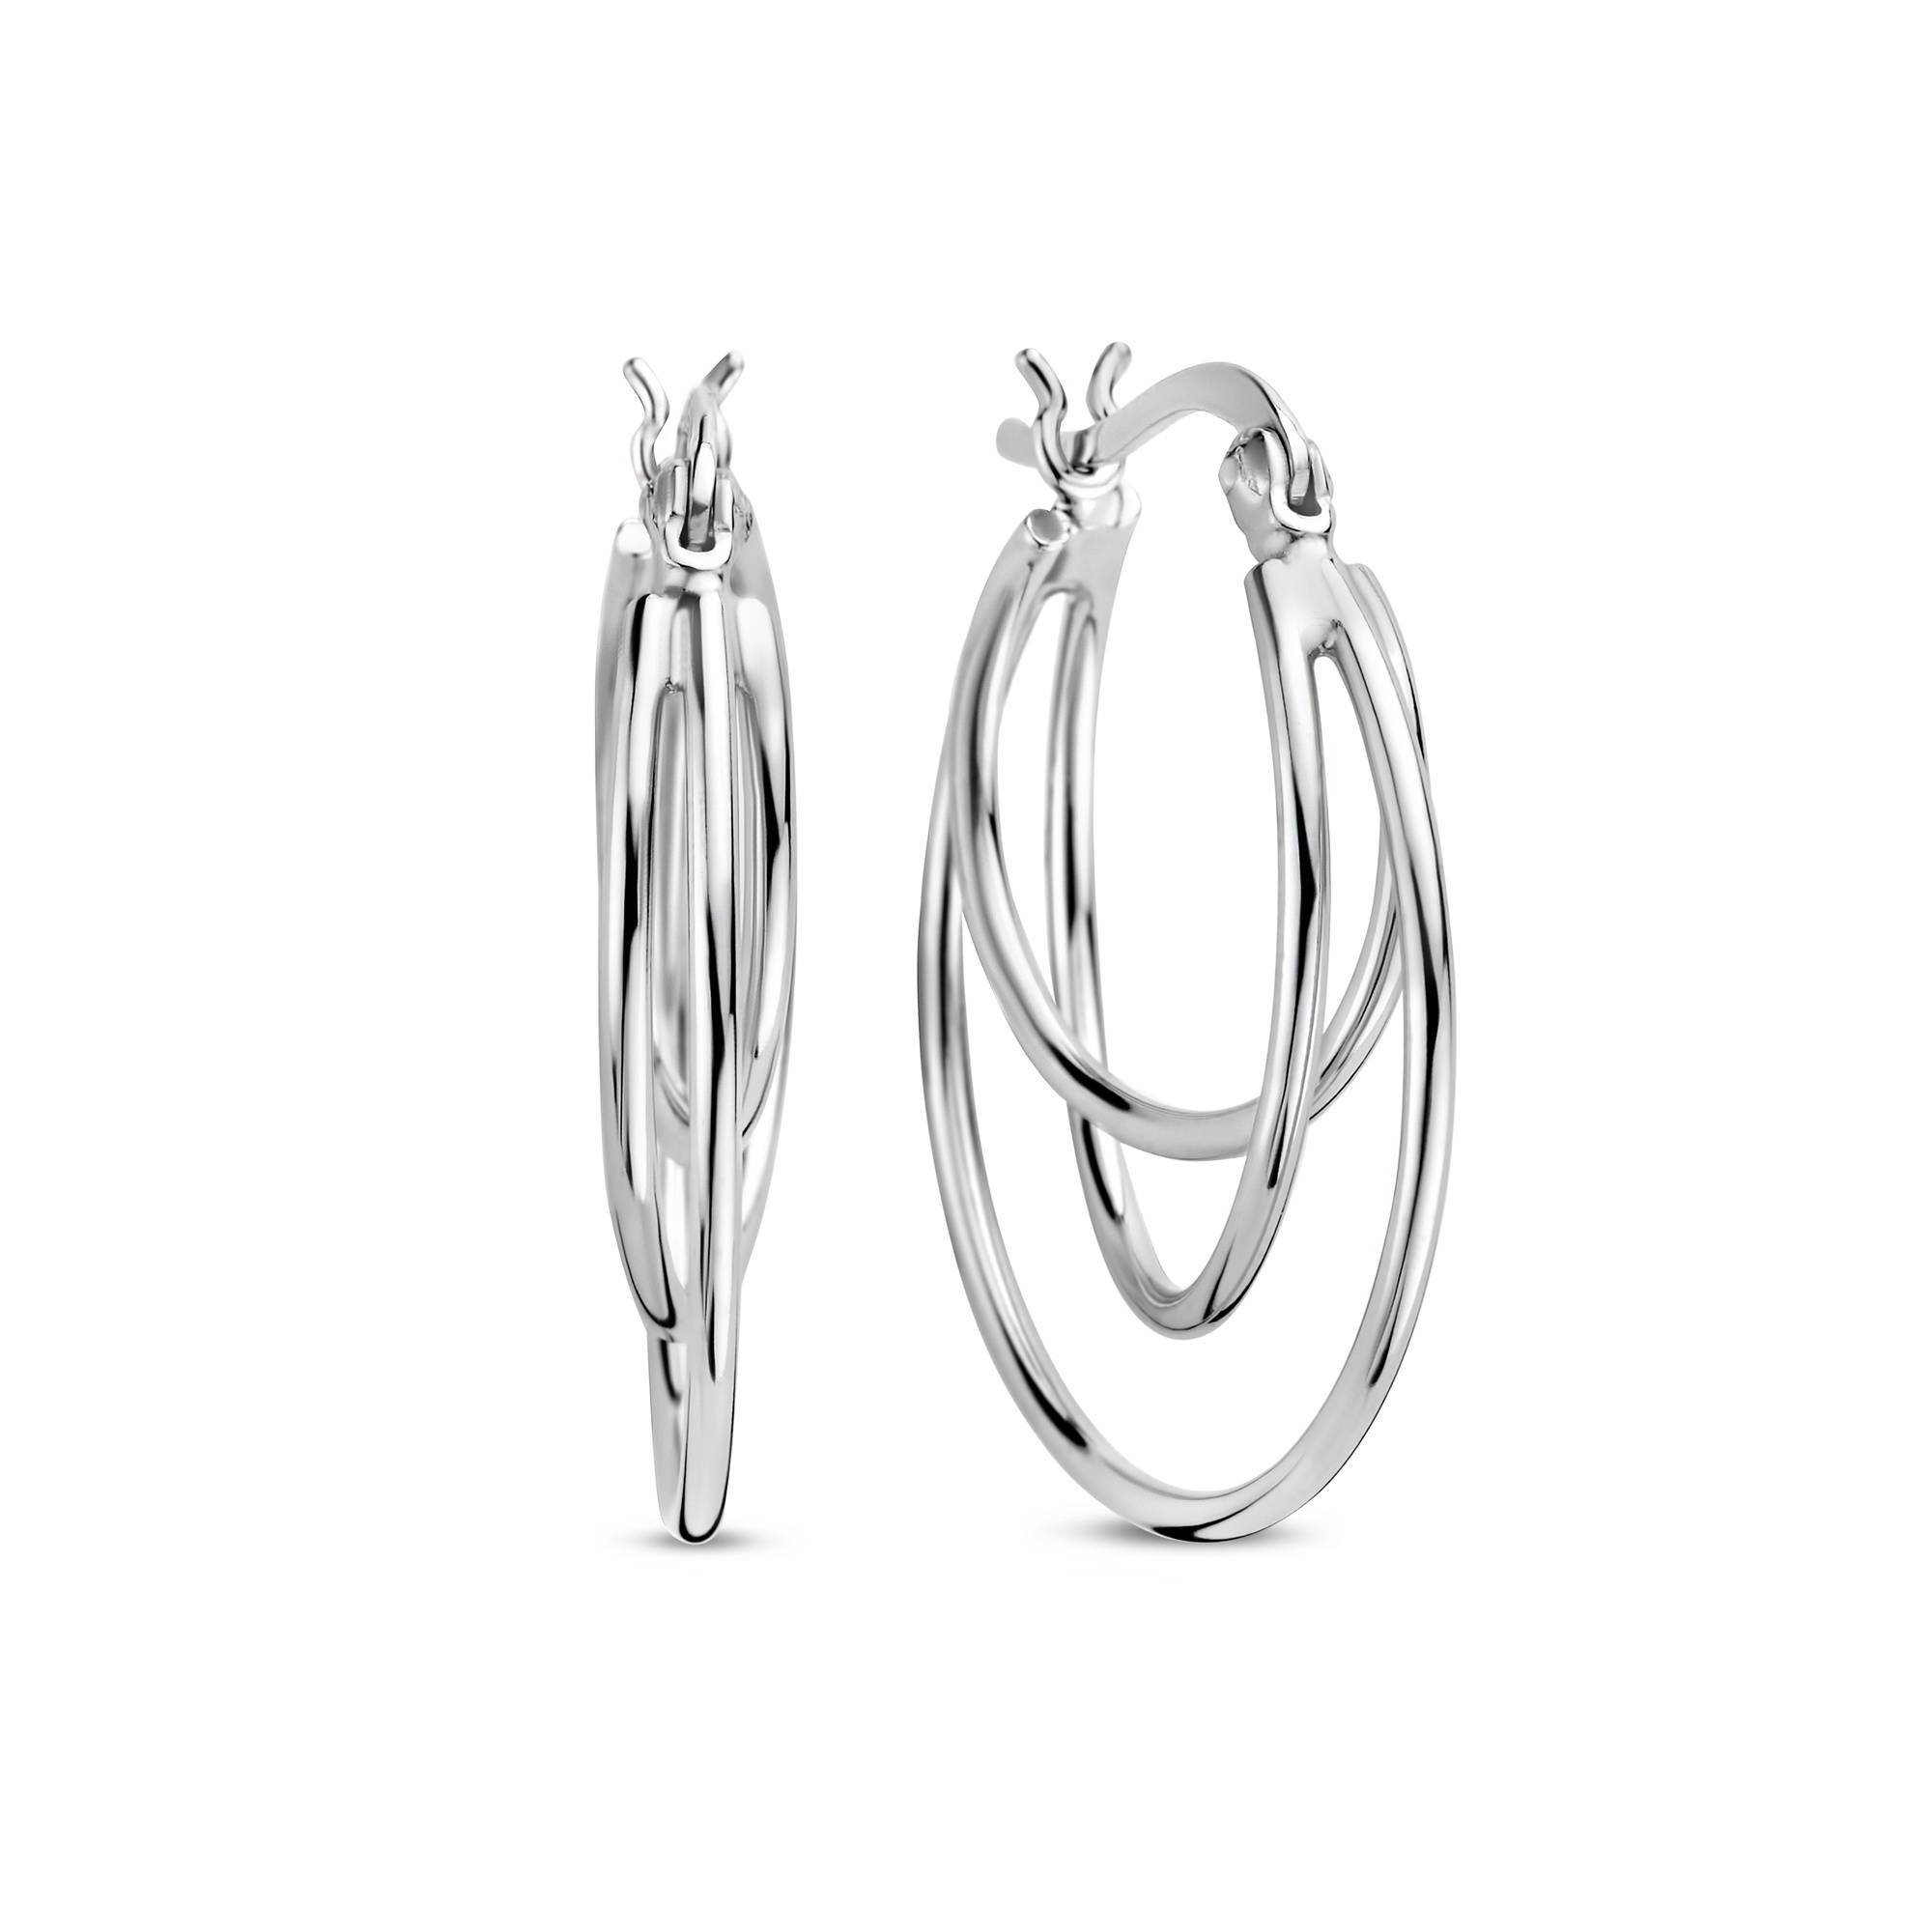 Zoé 925 sterling silver hoop earrings